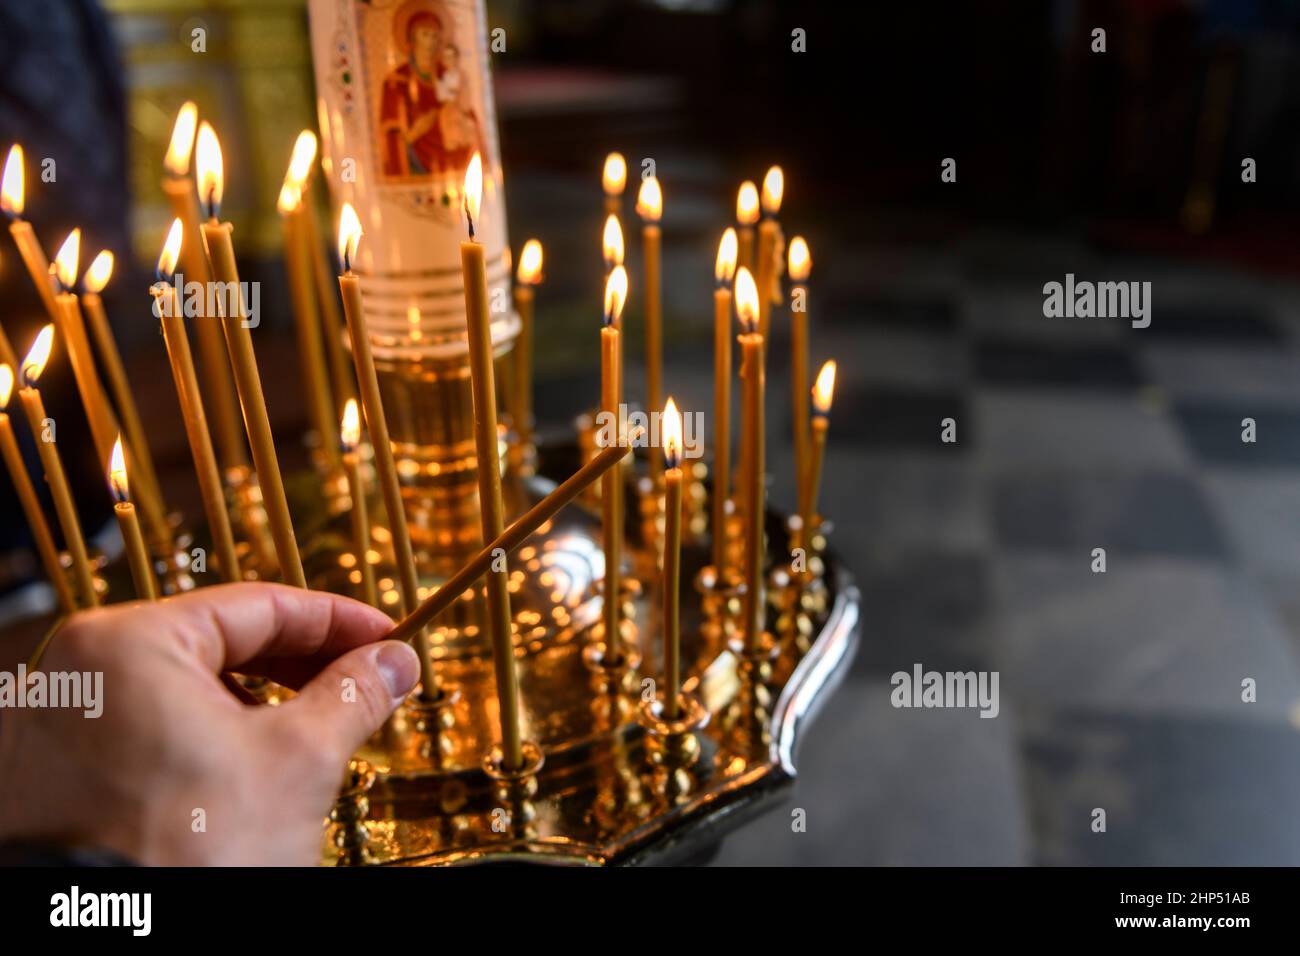 Kerzen in der russisch-orthodoxen Kathedrale mit Ikonen auf dem  Hintergrund. Kerze mit der Hand Stockfotografie - Alamy